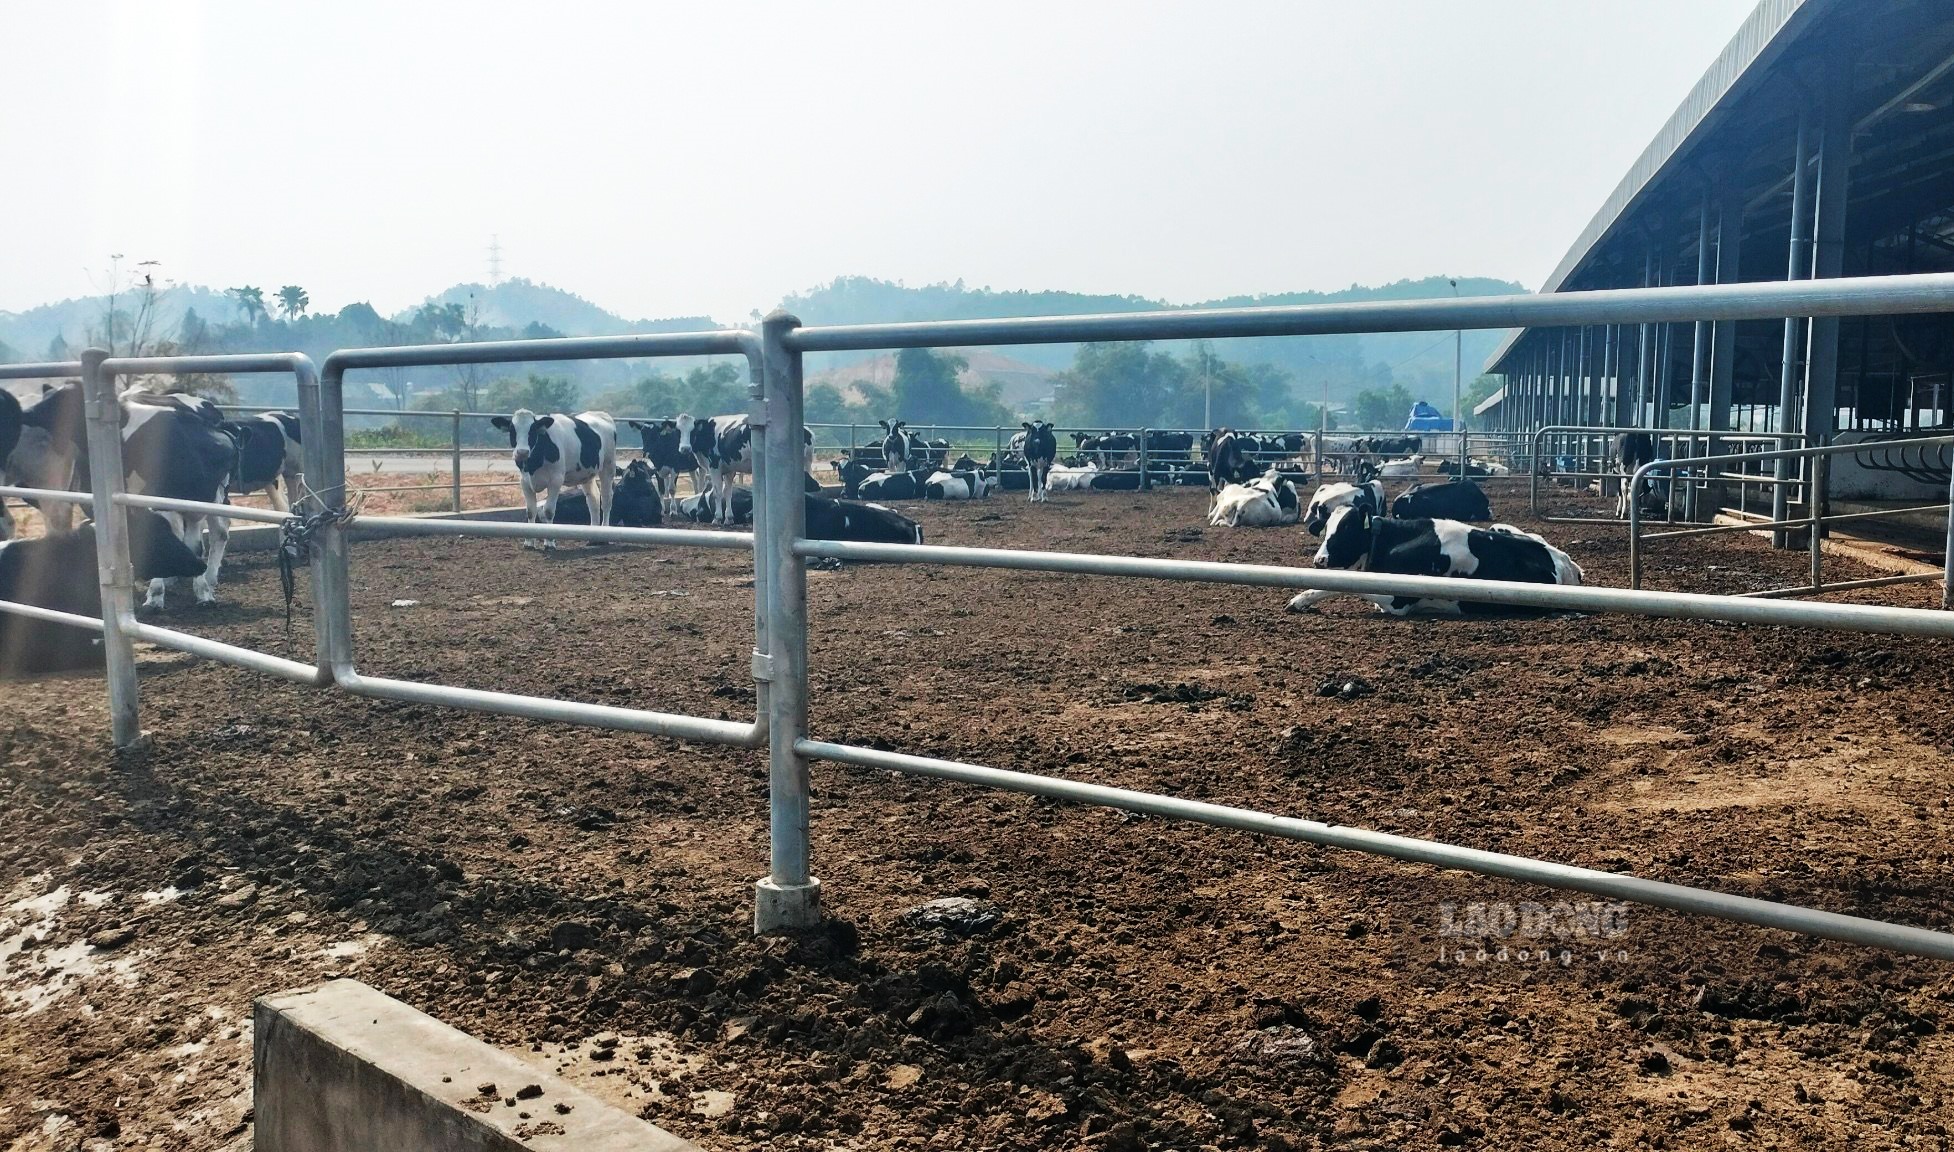 Chất thải của bò tại khu chăn nuôi có thể nhìn thấy rõ từ đường đi.